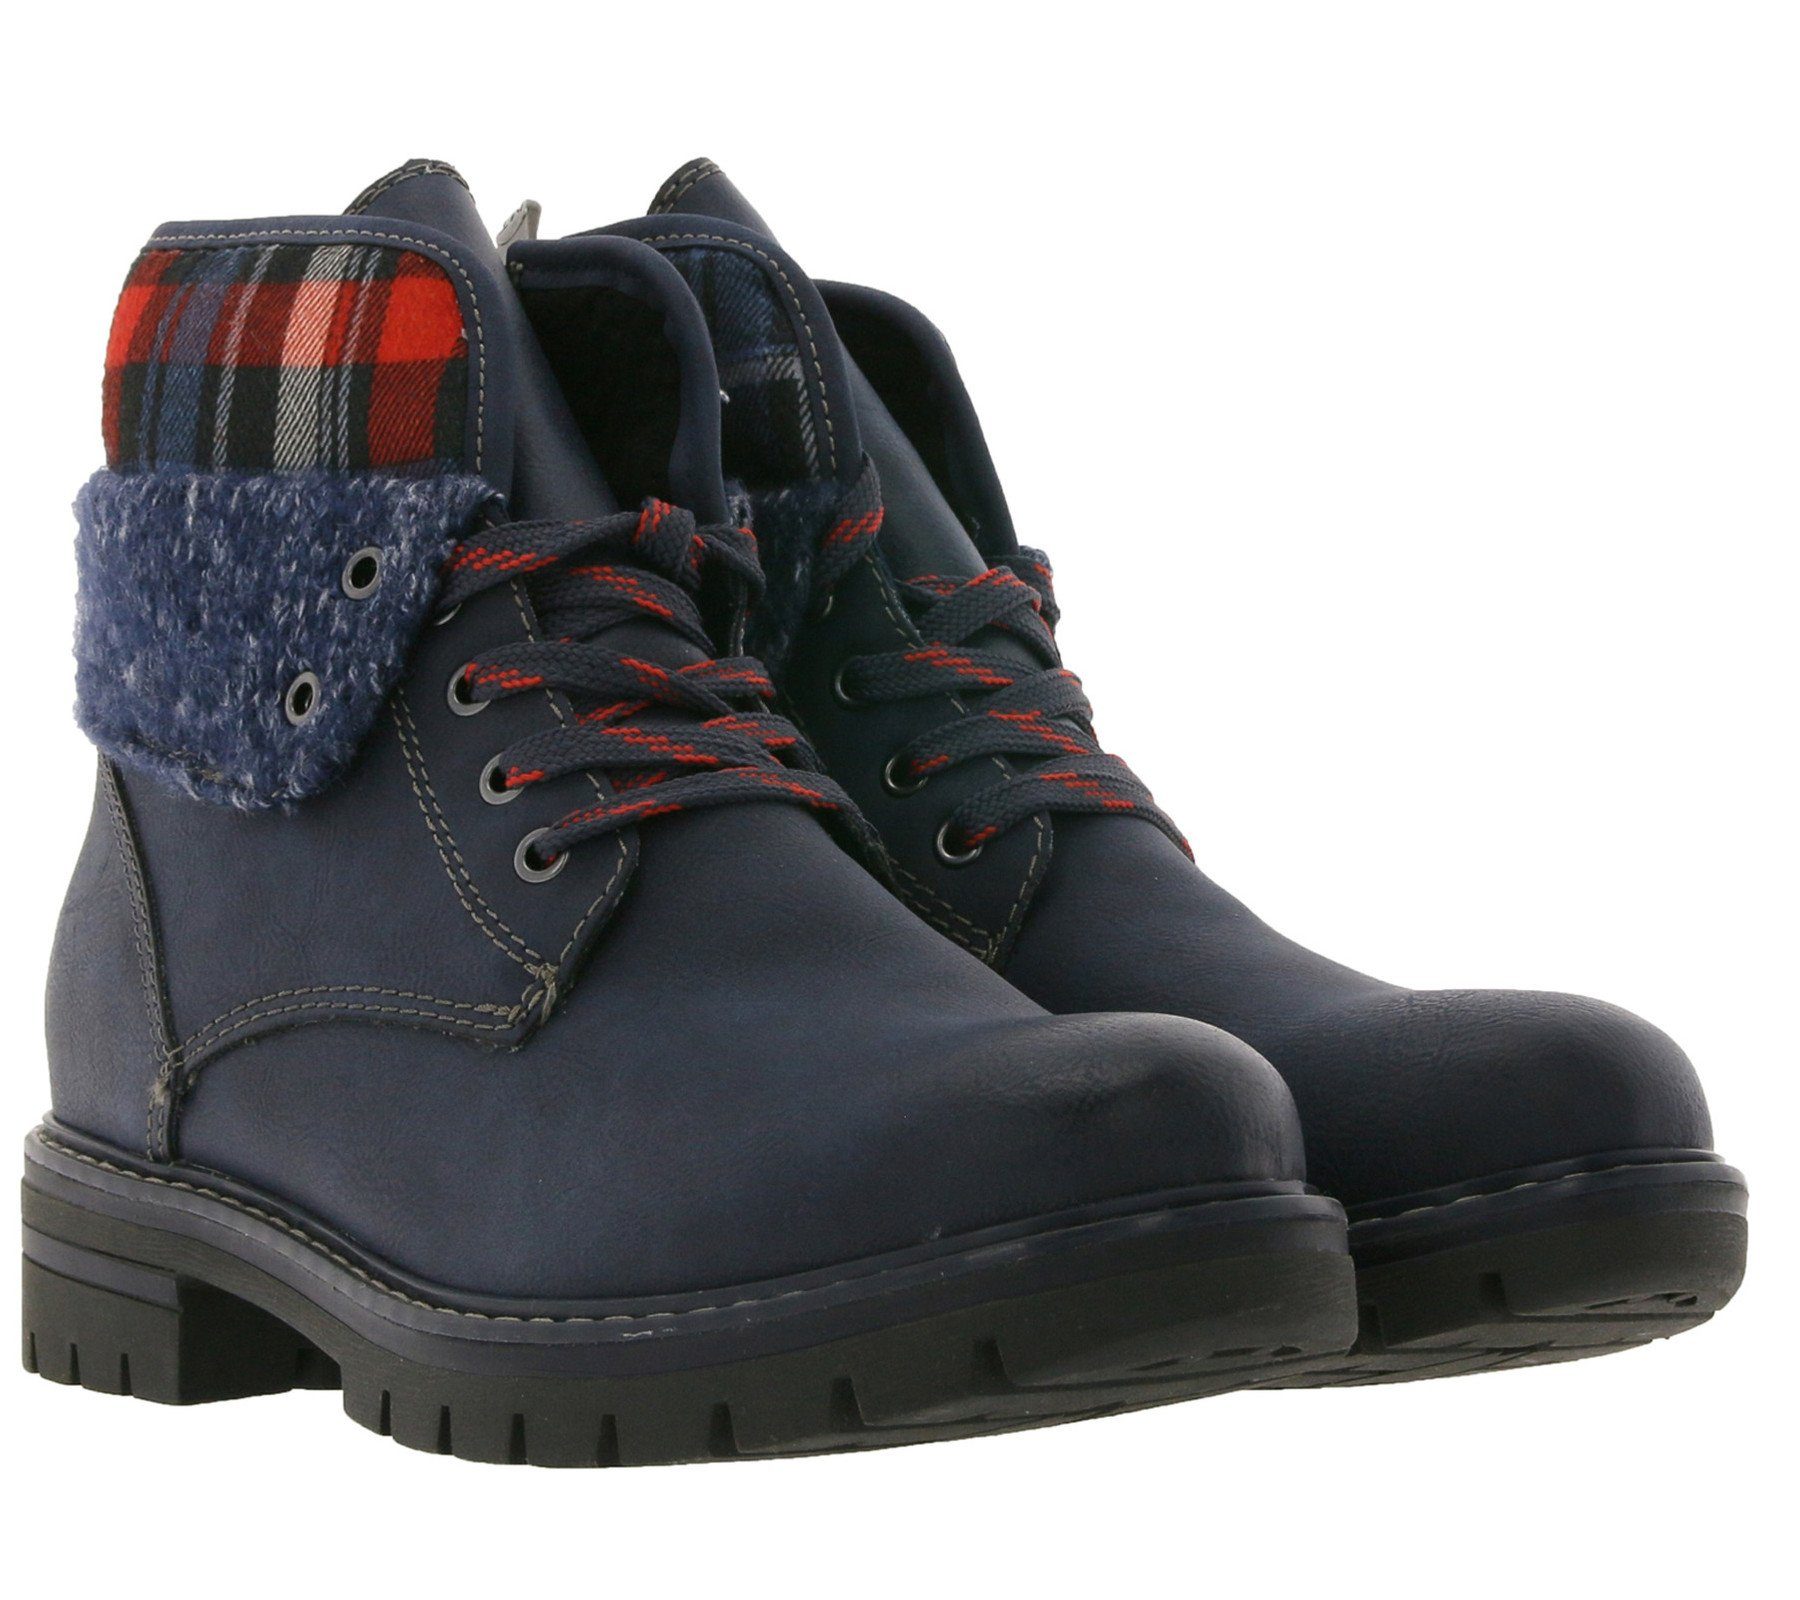 MARCO TOZZI »MARCO TOZZI Schnür-Boots karierte Damen Winter-Stiefel mit  Textilkragen Outdoor-Schuhe Navy/Kariert« Stiefel online kaufen | OTTO